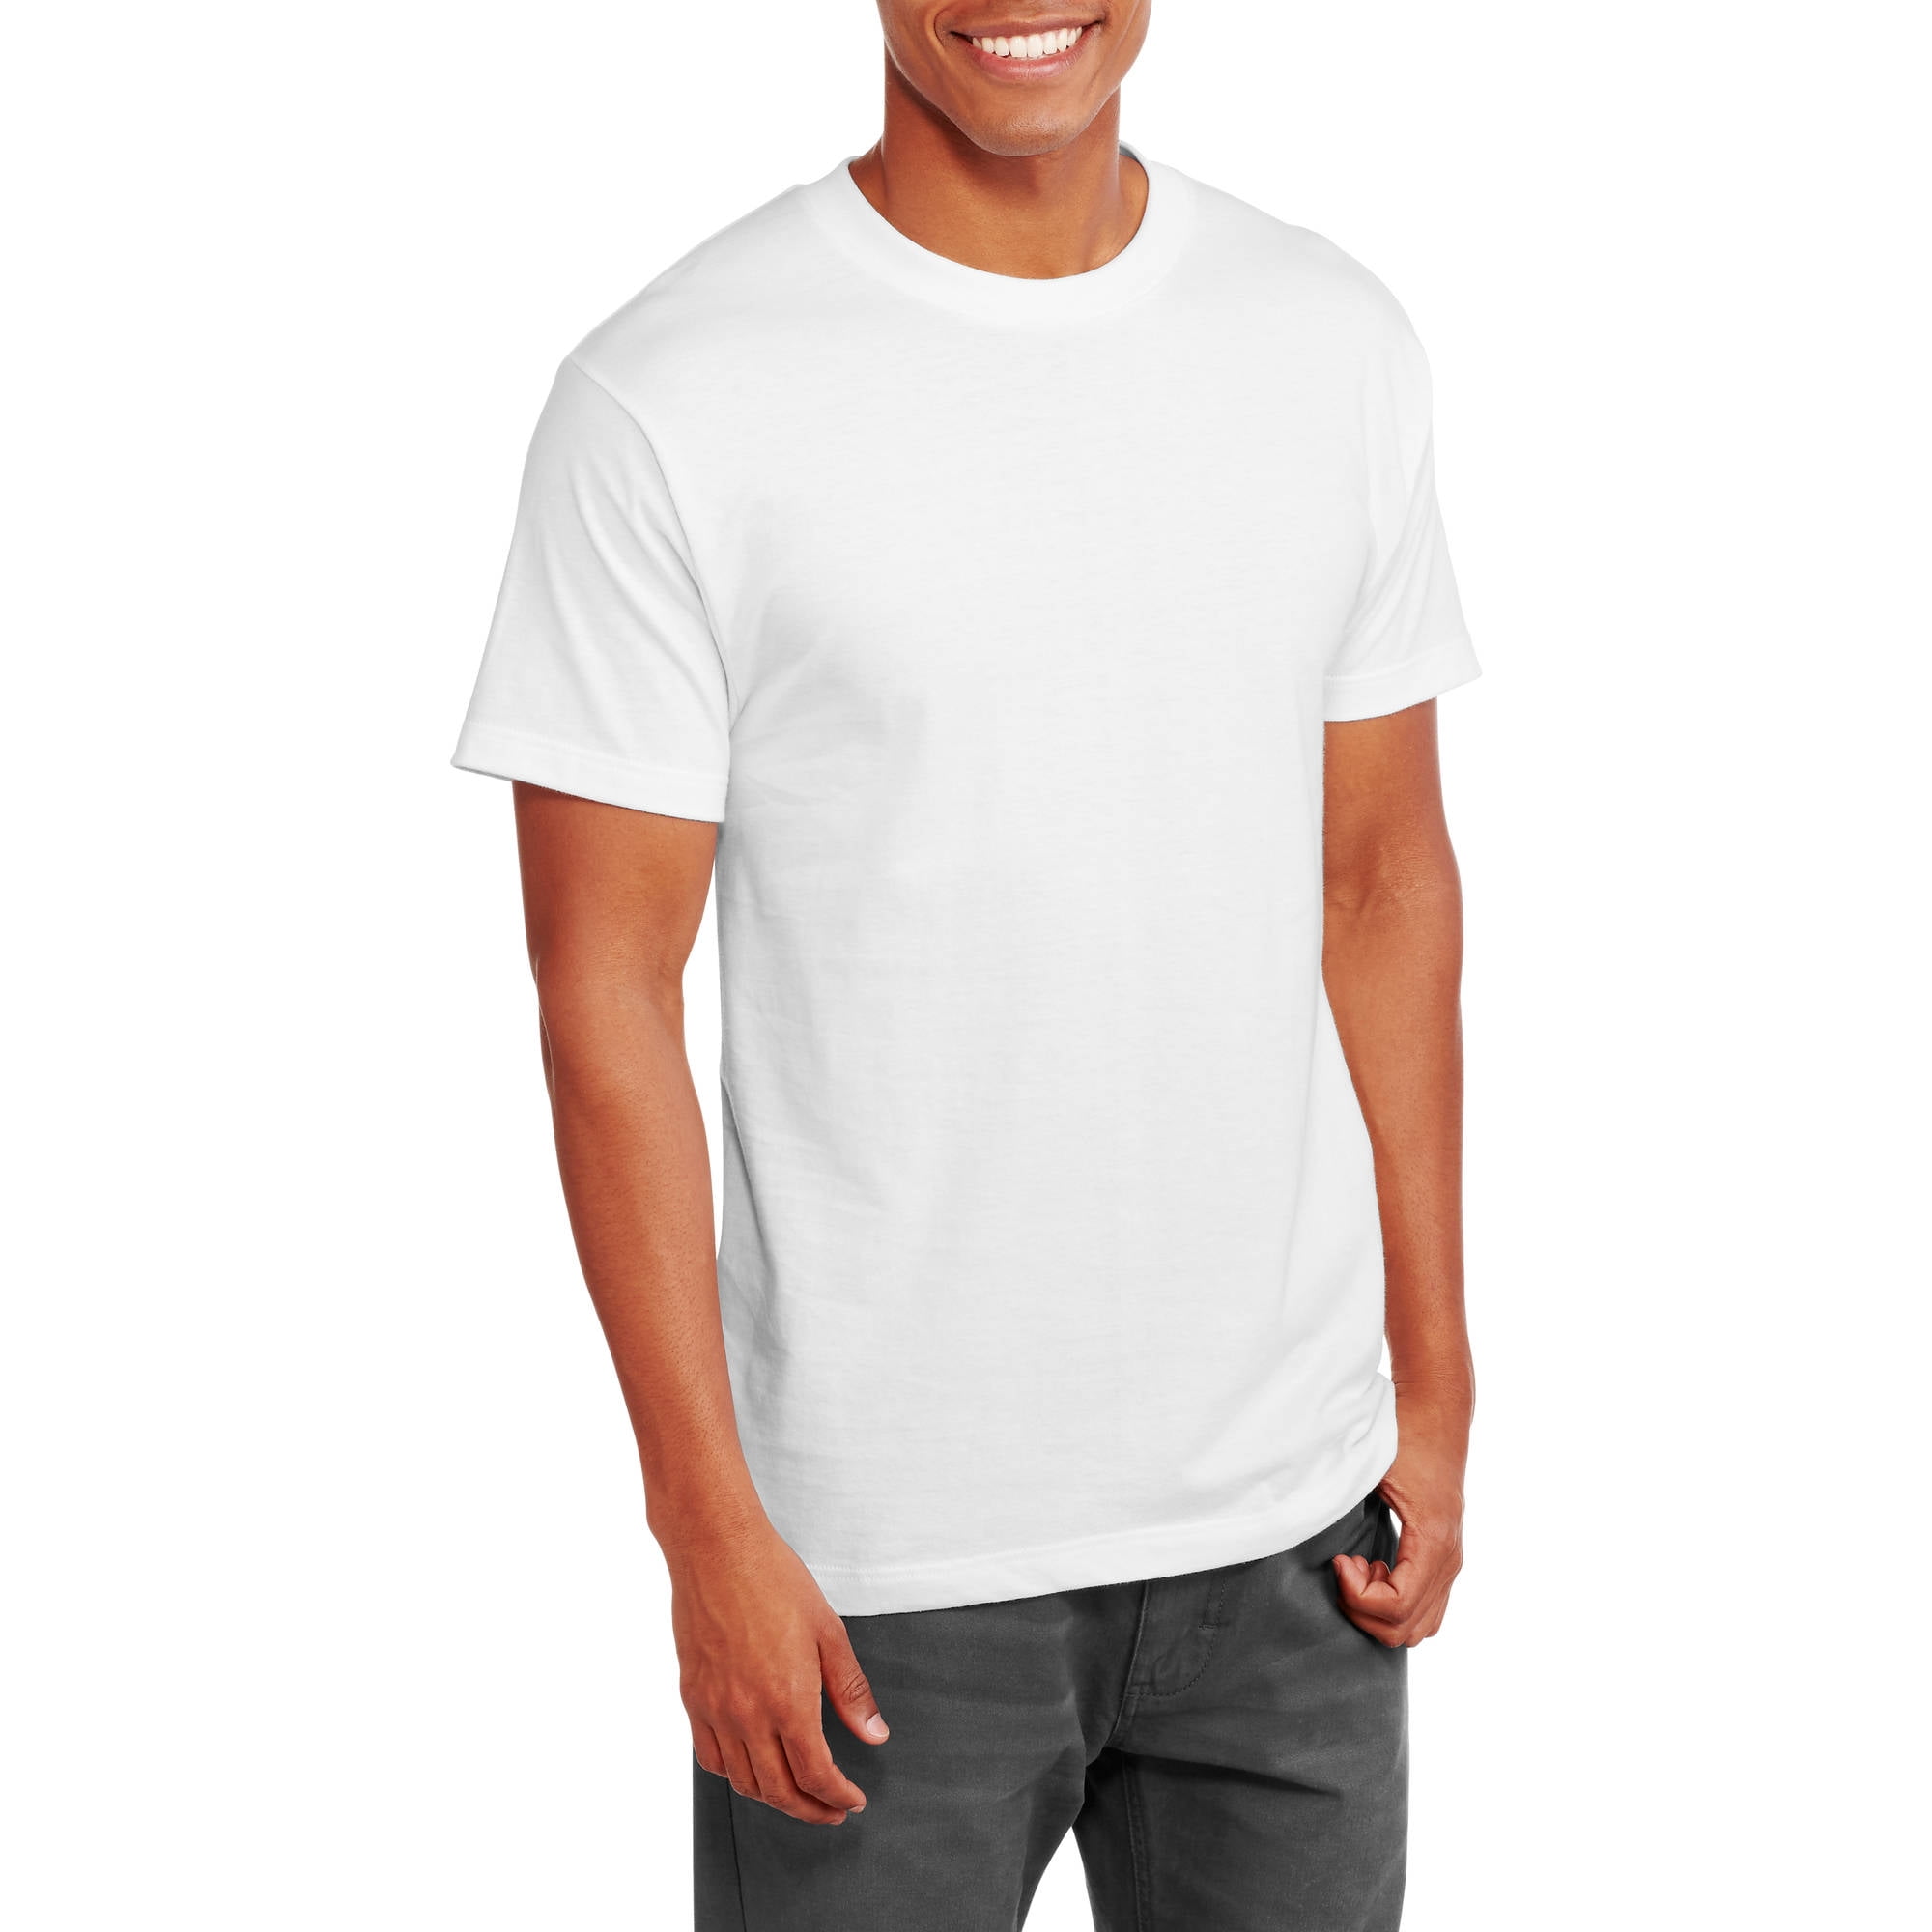 plain white t shirt walmart